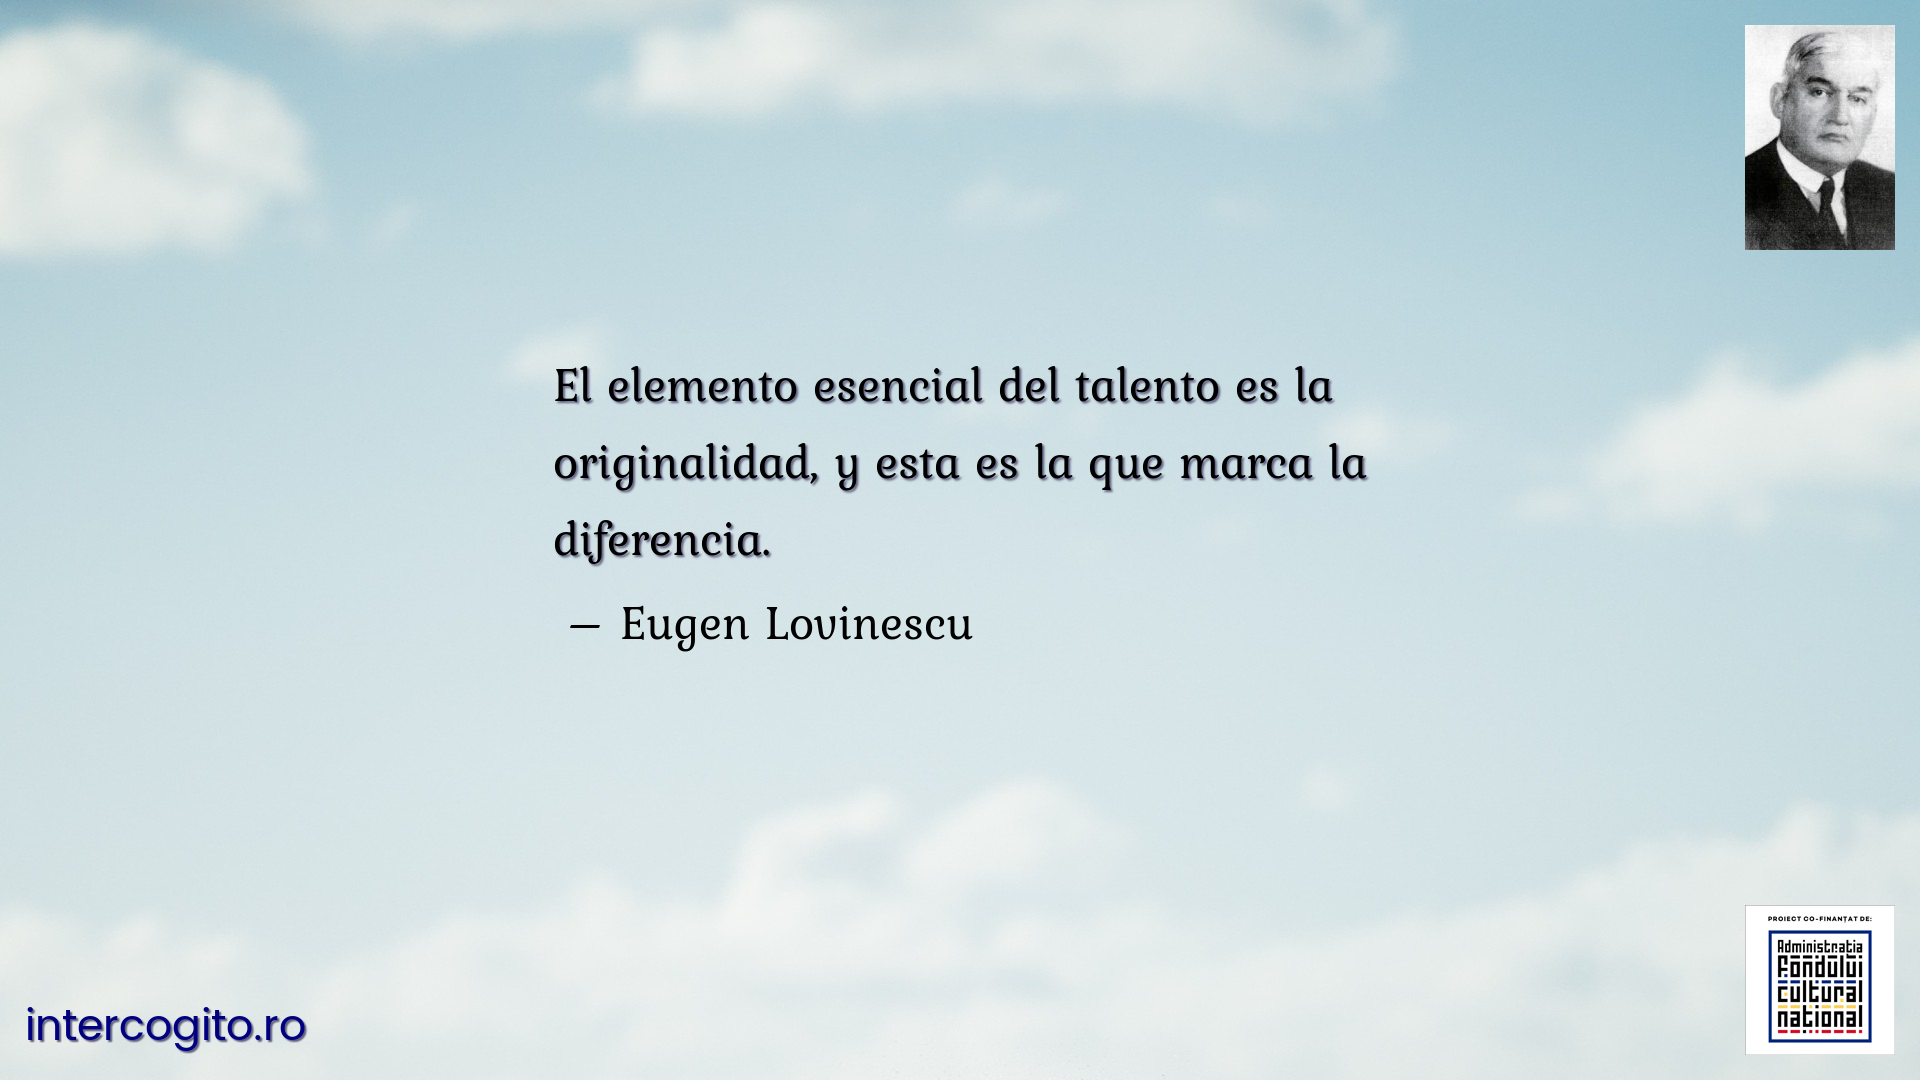 El elemento esencial del talento es la originalidad, y esta es la que marca la diferencia.